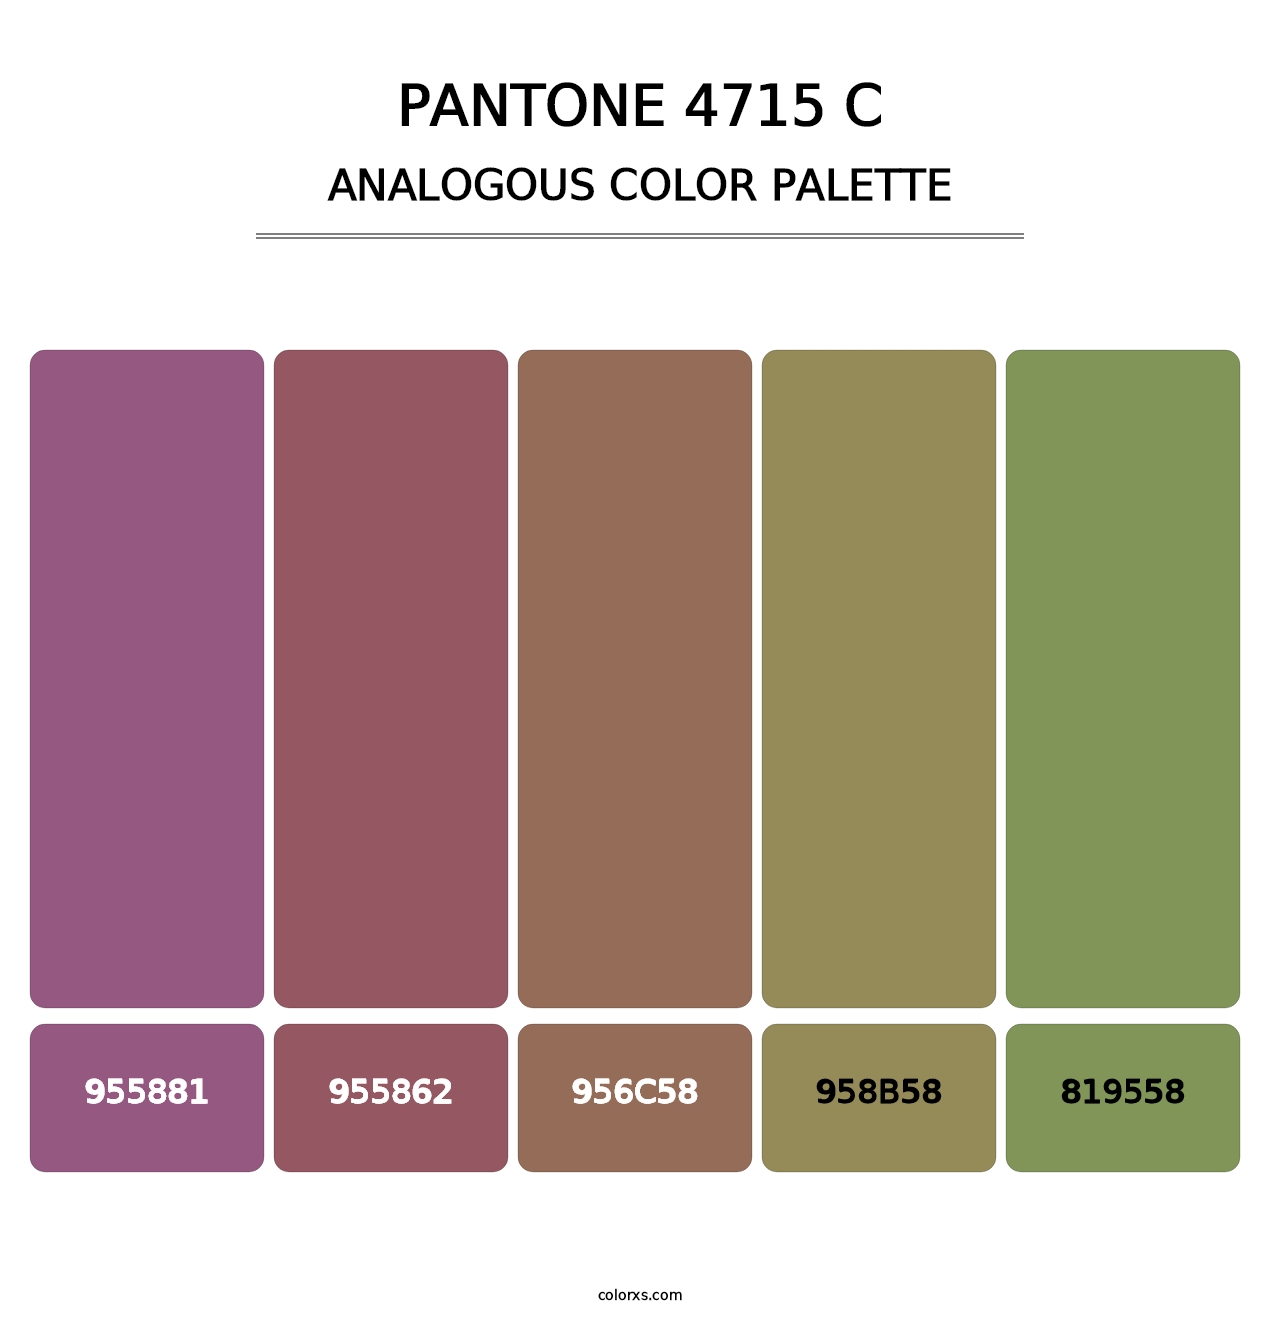 PANTONE 4715 C - Analogous Color Palette